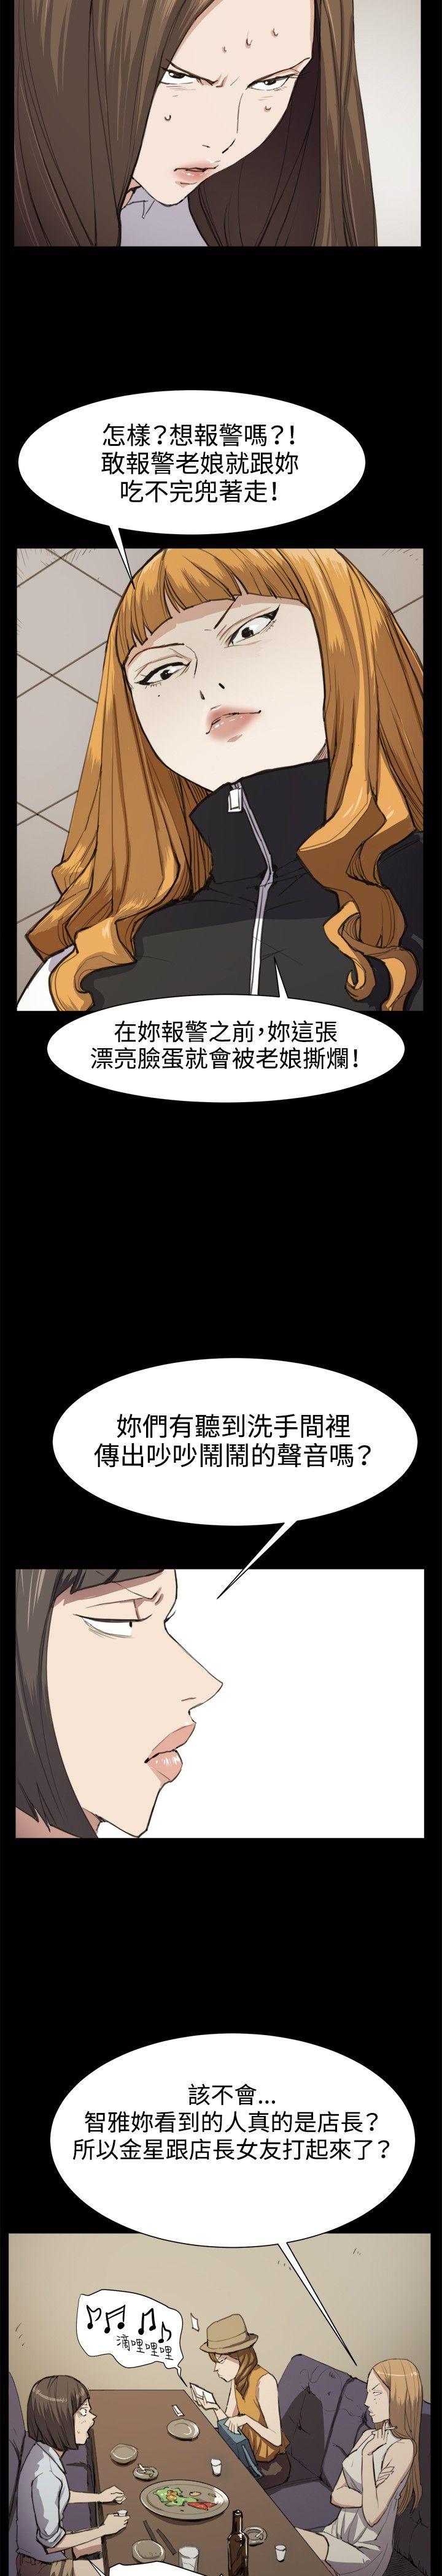 韩国污漫画 深夜便利店 第12话 9